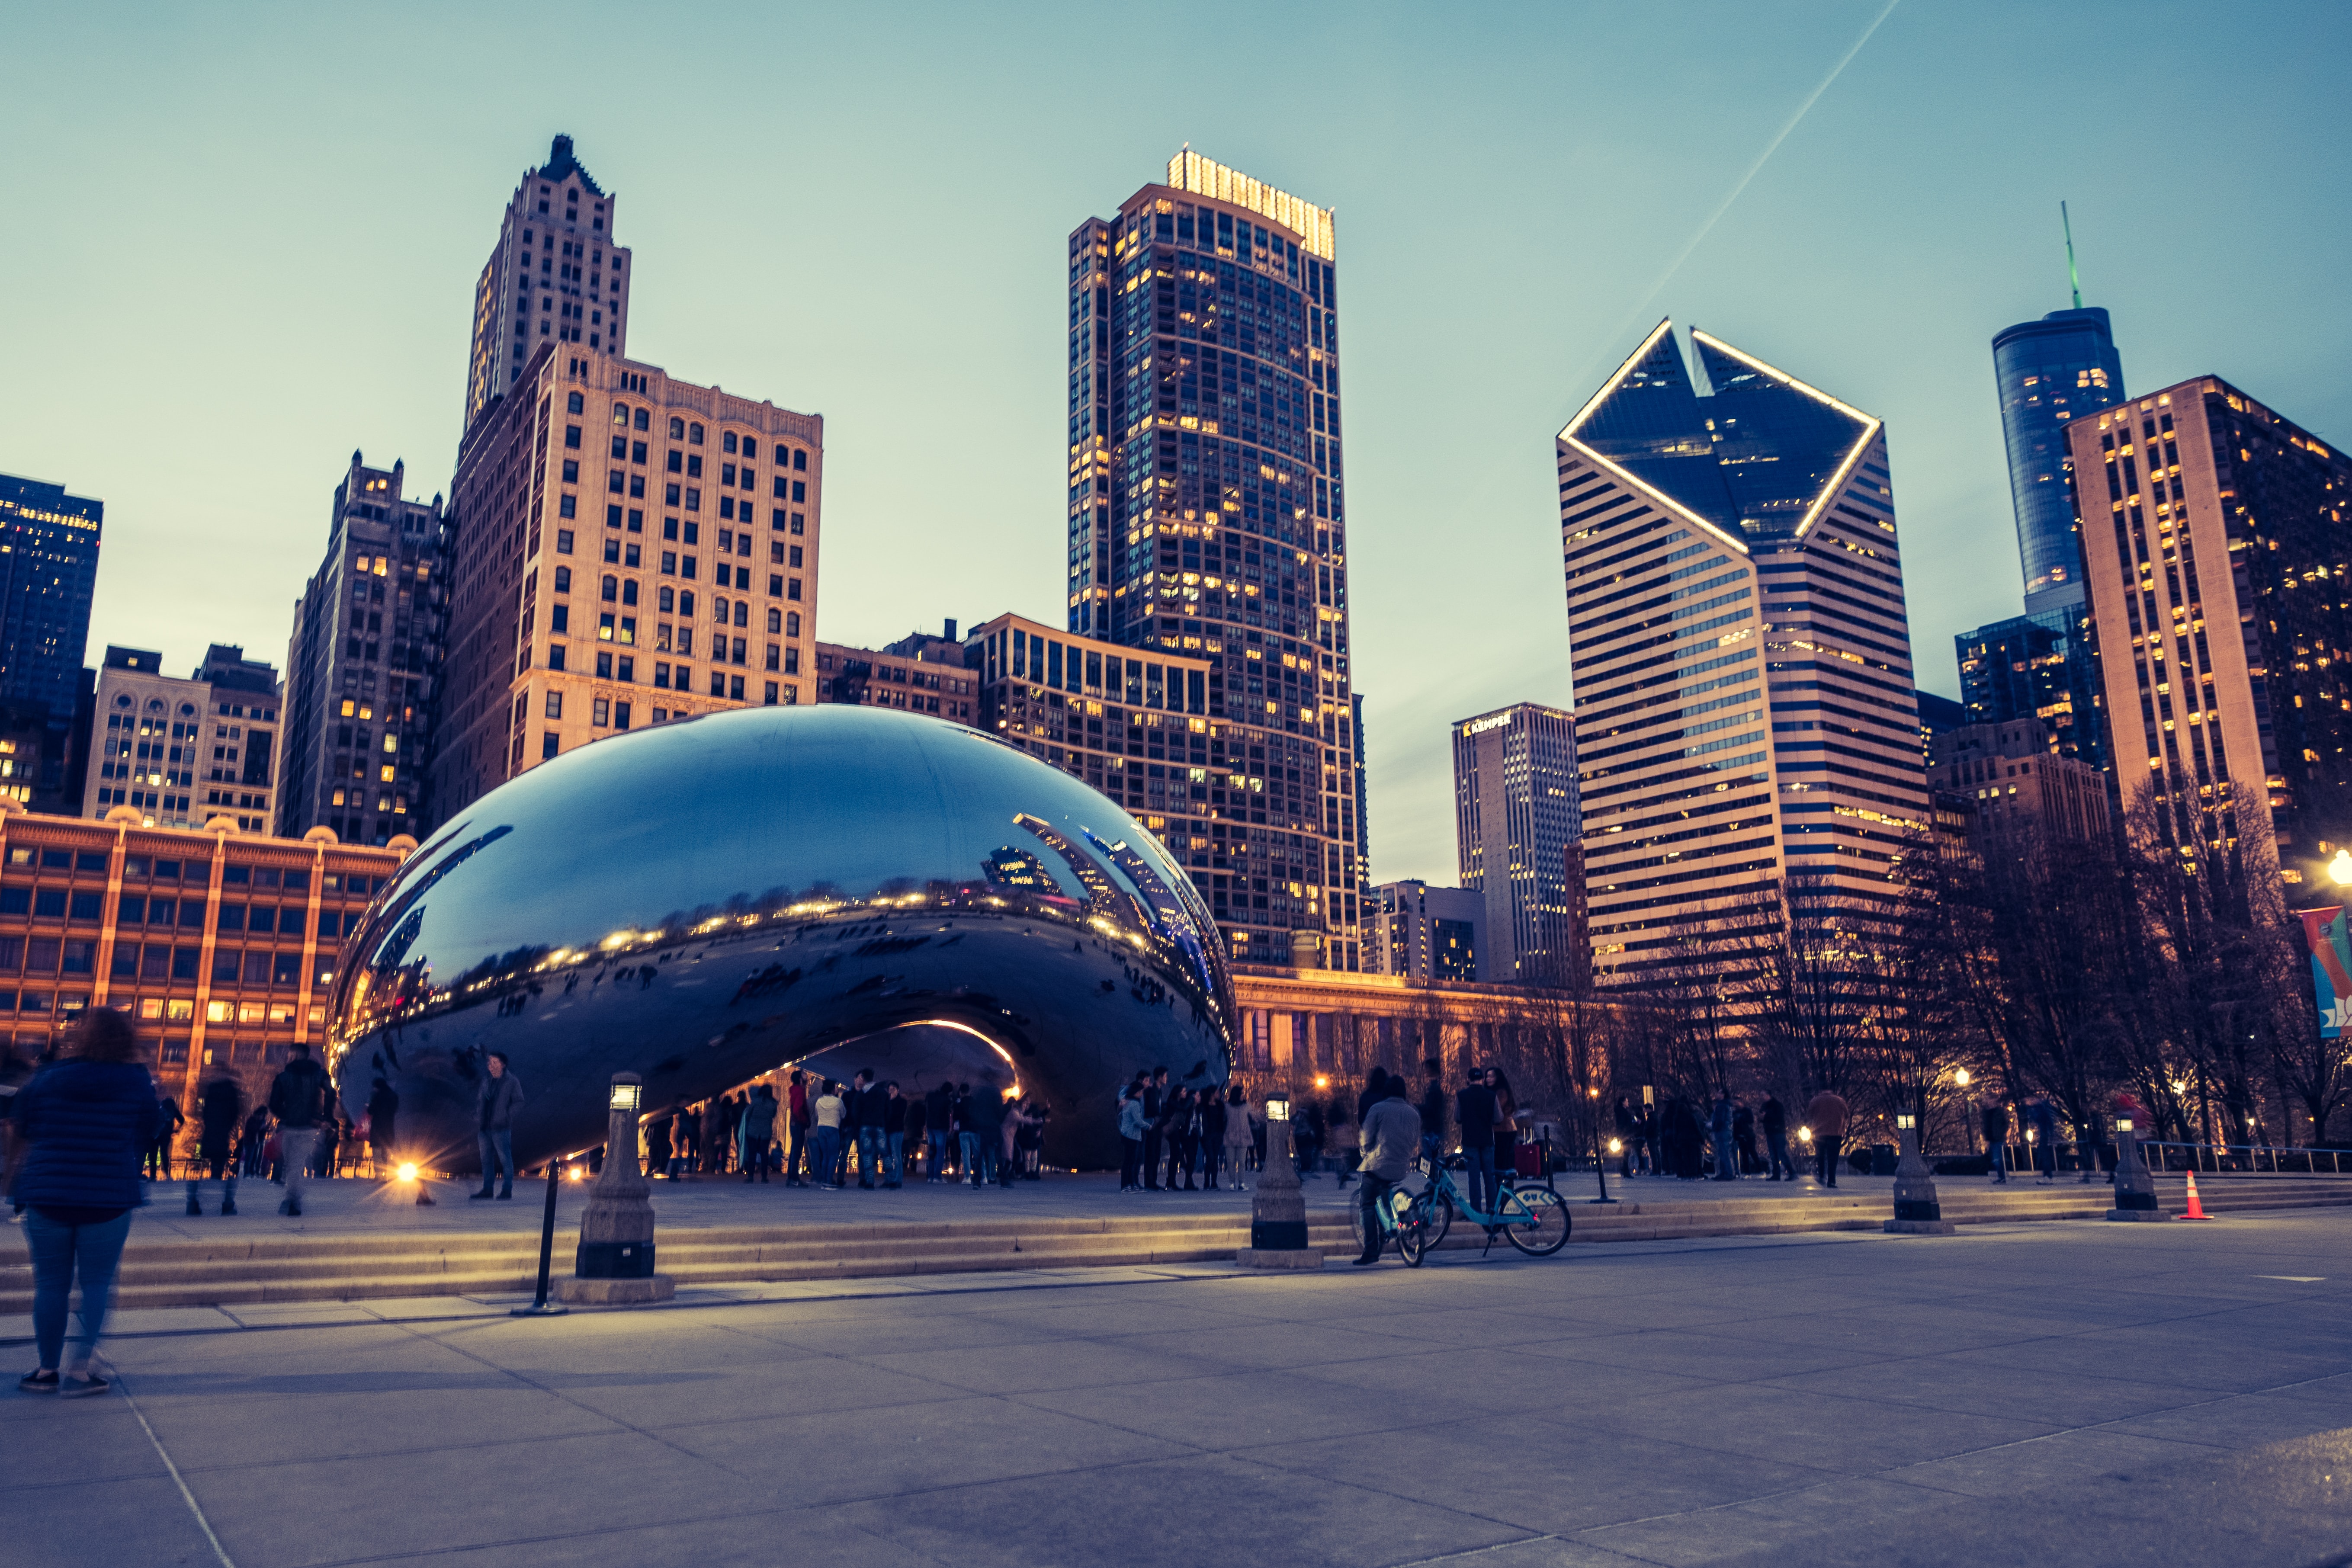 An Illinois icon: Chicago's 'Bean'